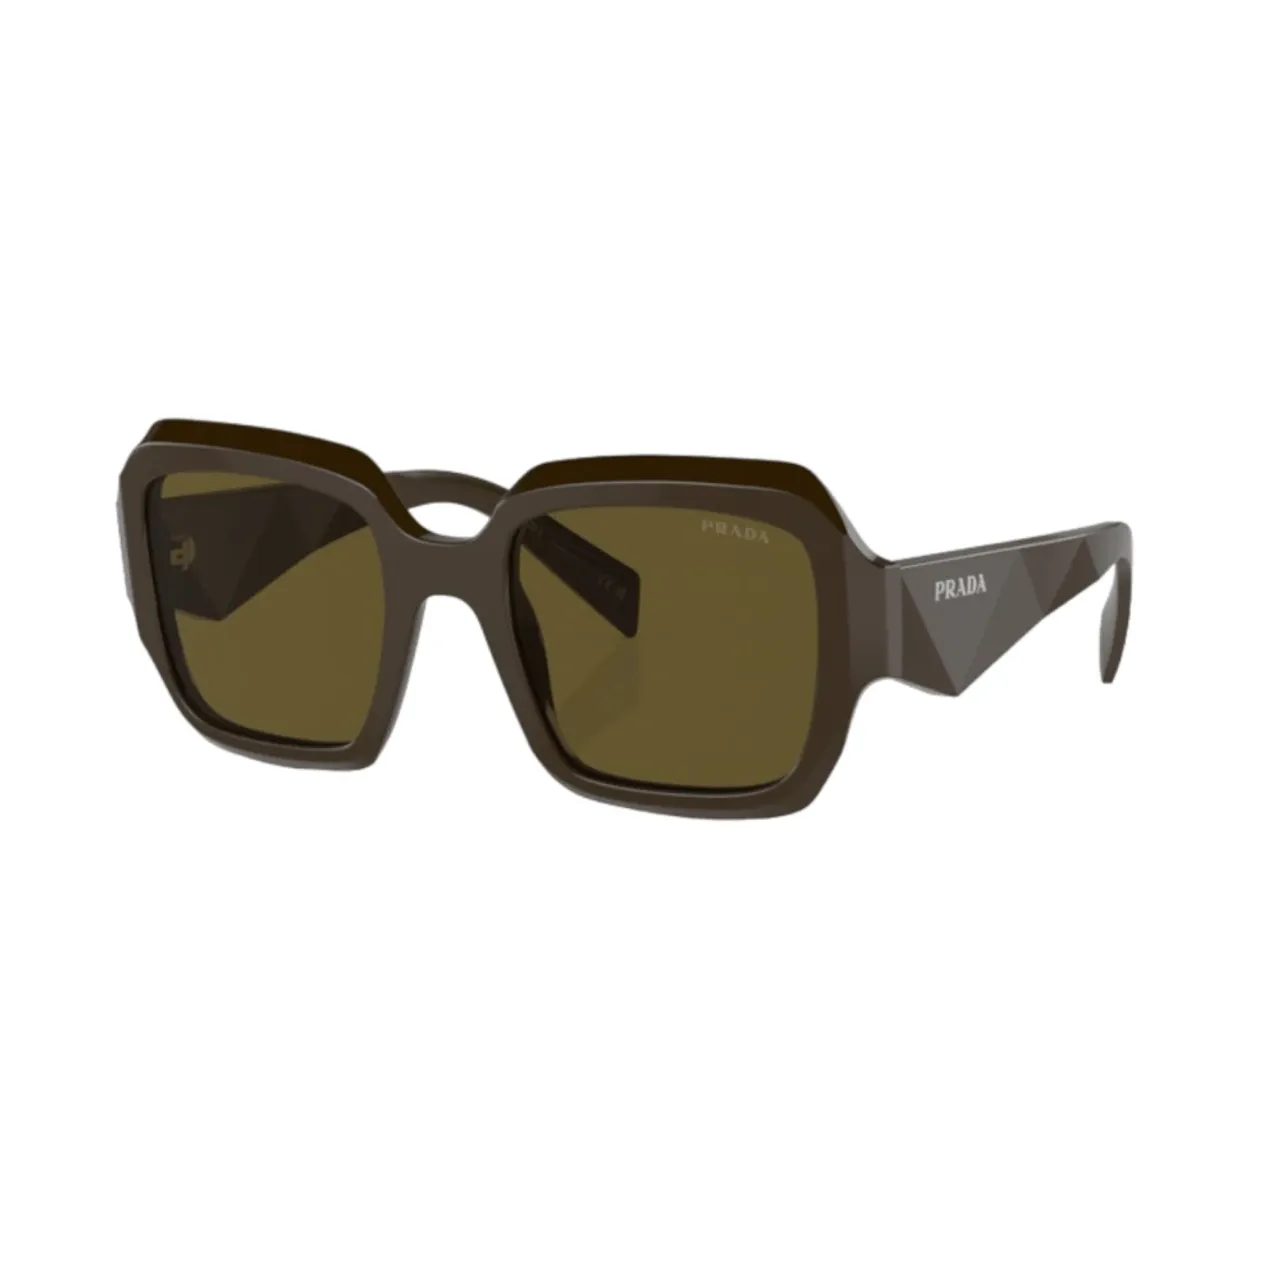 Stilvolle Oversize Braune Sonnenbrille Prada